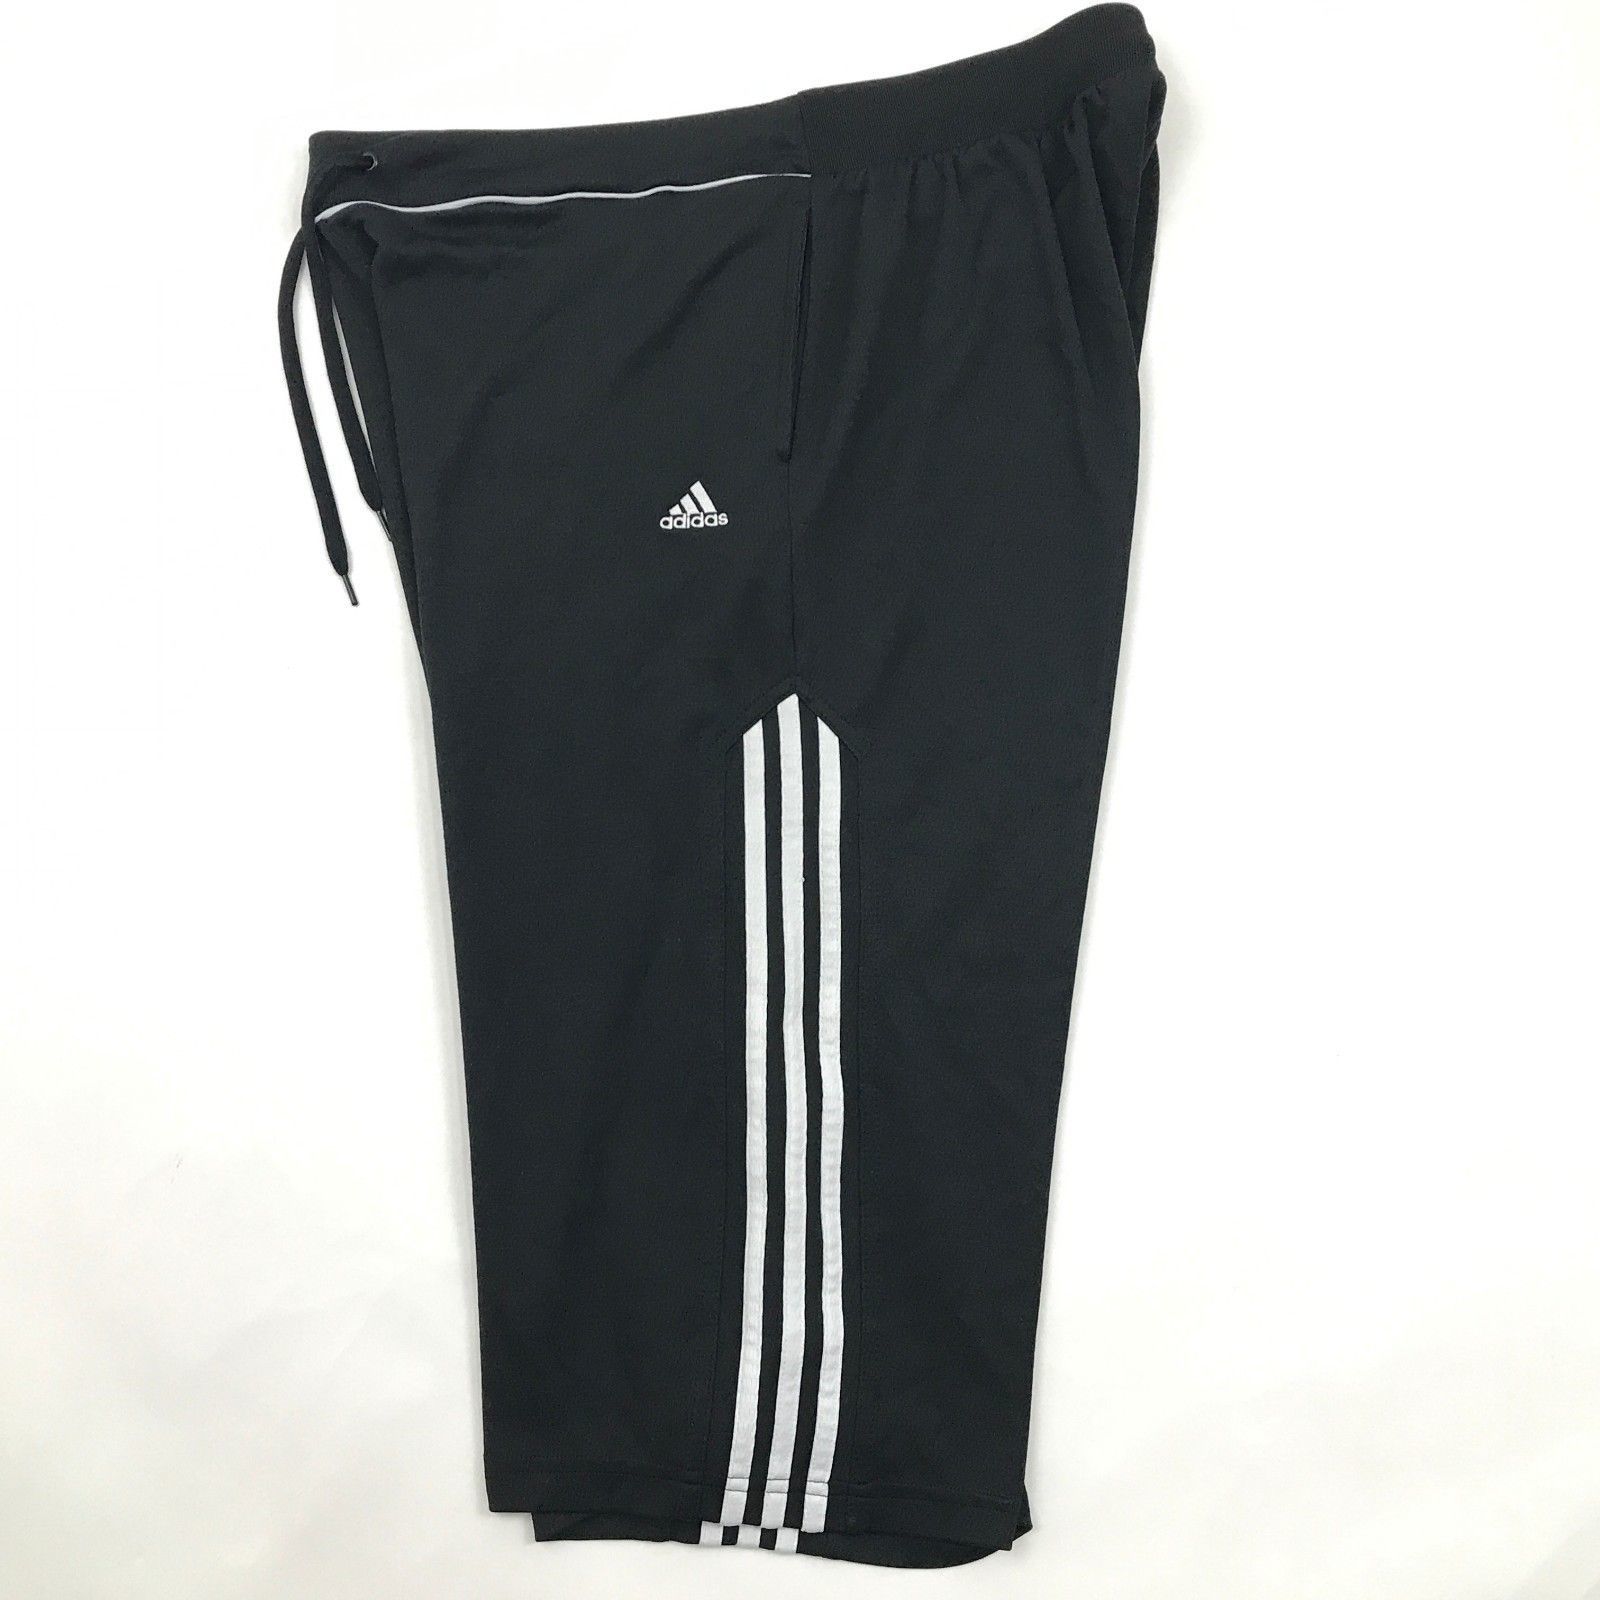 Adidas Capri Pants Size M/L Three Stripe Cardio Workout Cropped Pant ...